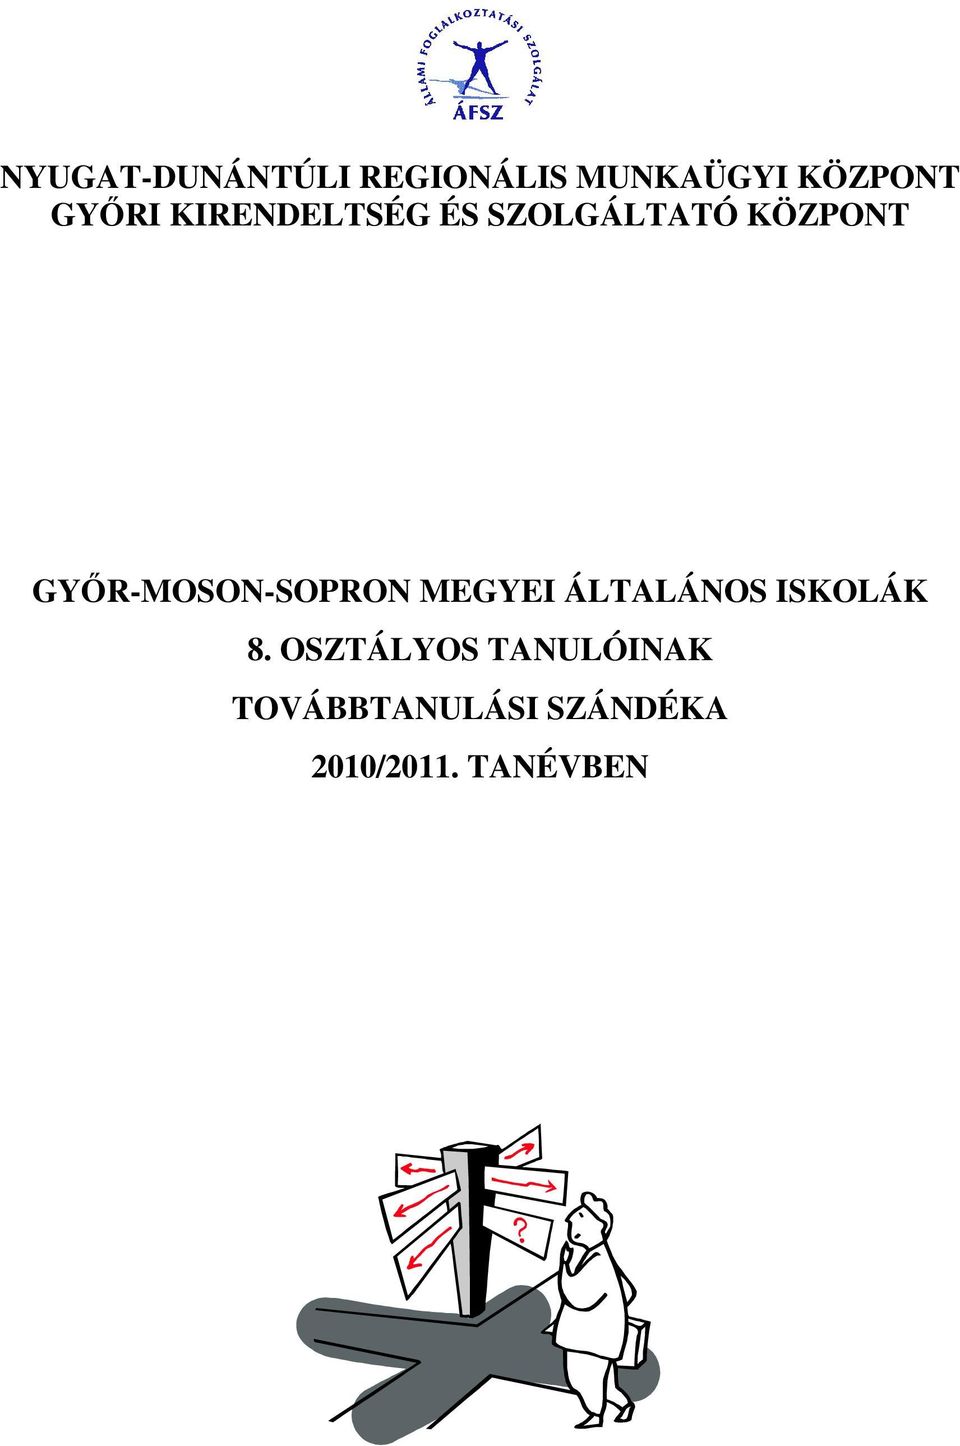 GYİR-MOSON-SOPRON MEGYEI ÁLTALÁNOS ISKOLÁK 8.